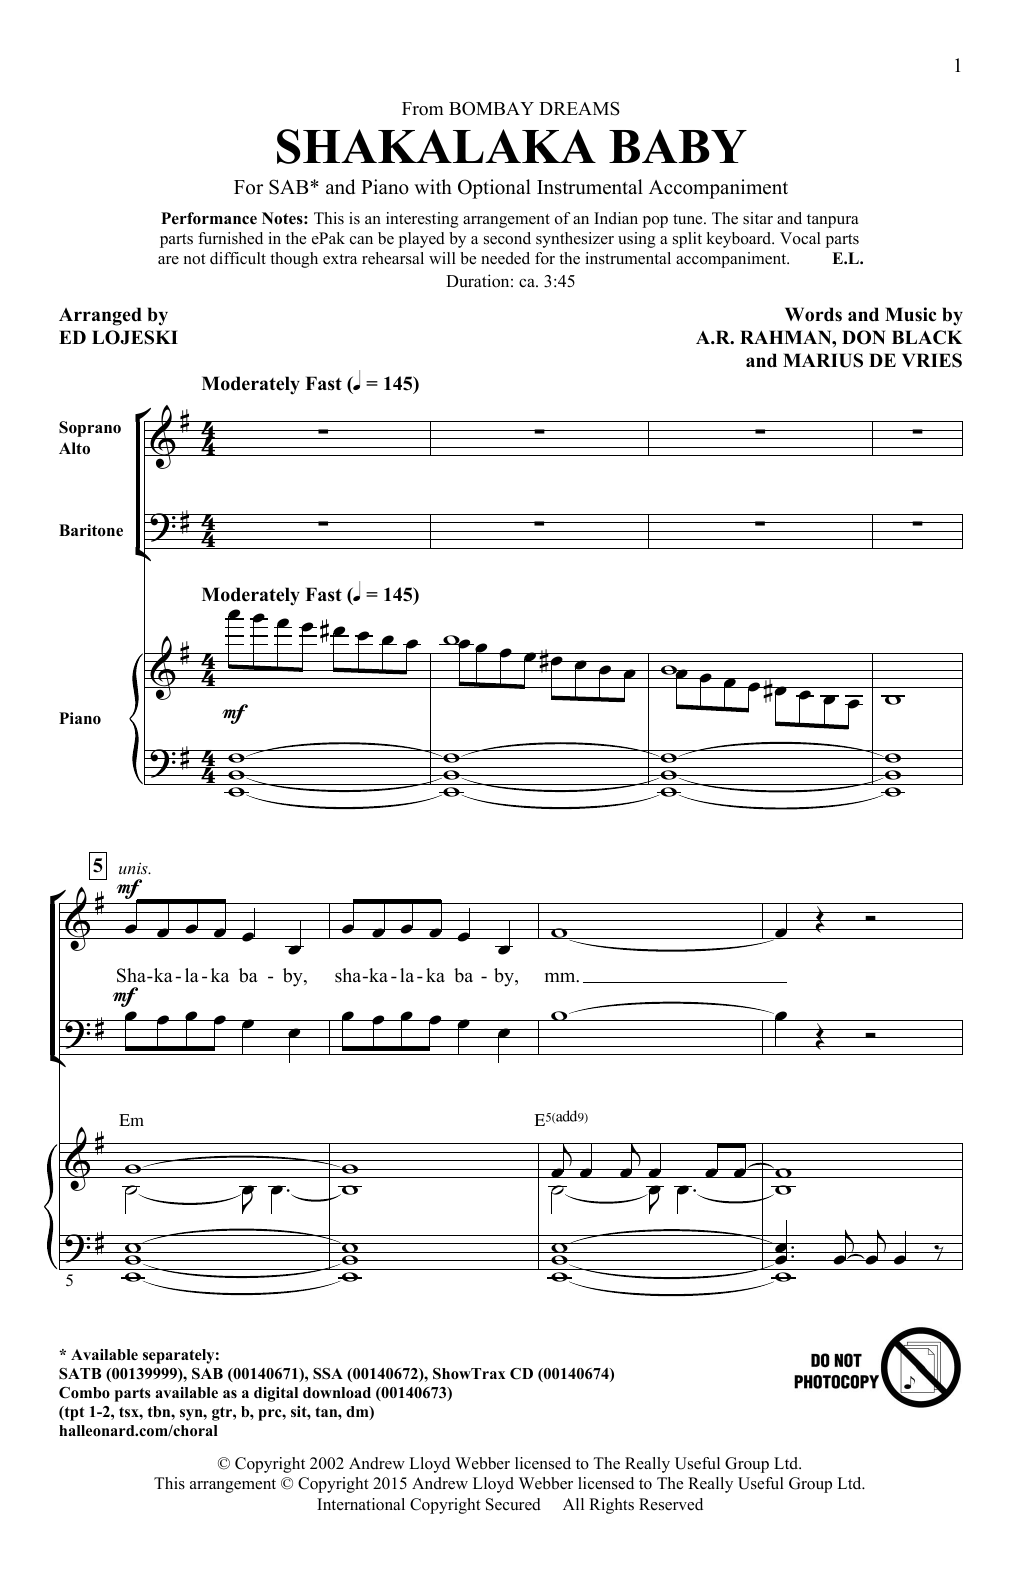 Ed Lojeski Shakalaka Baby (from Bombay Dreams) Sheet Music Notes & Chords for SATB - Download or Print PDF